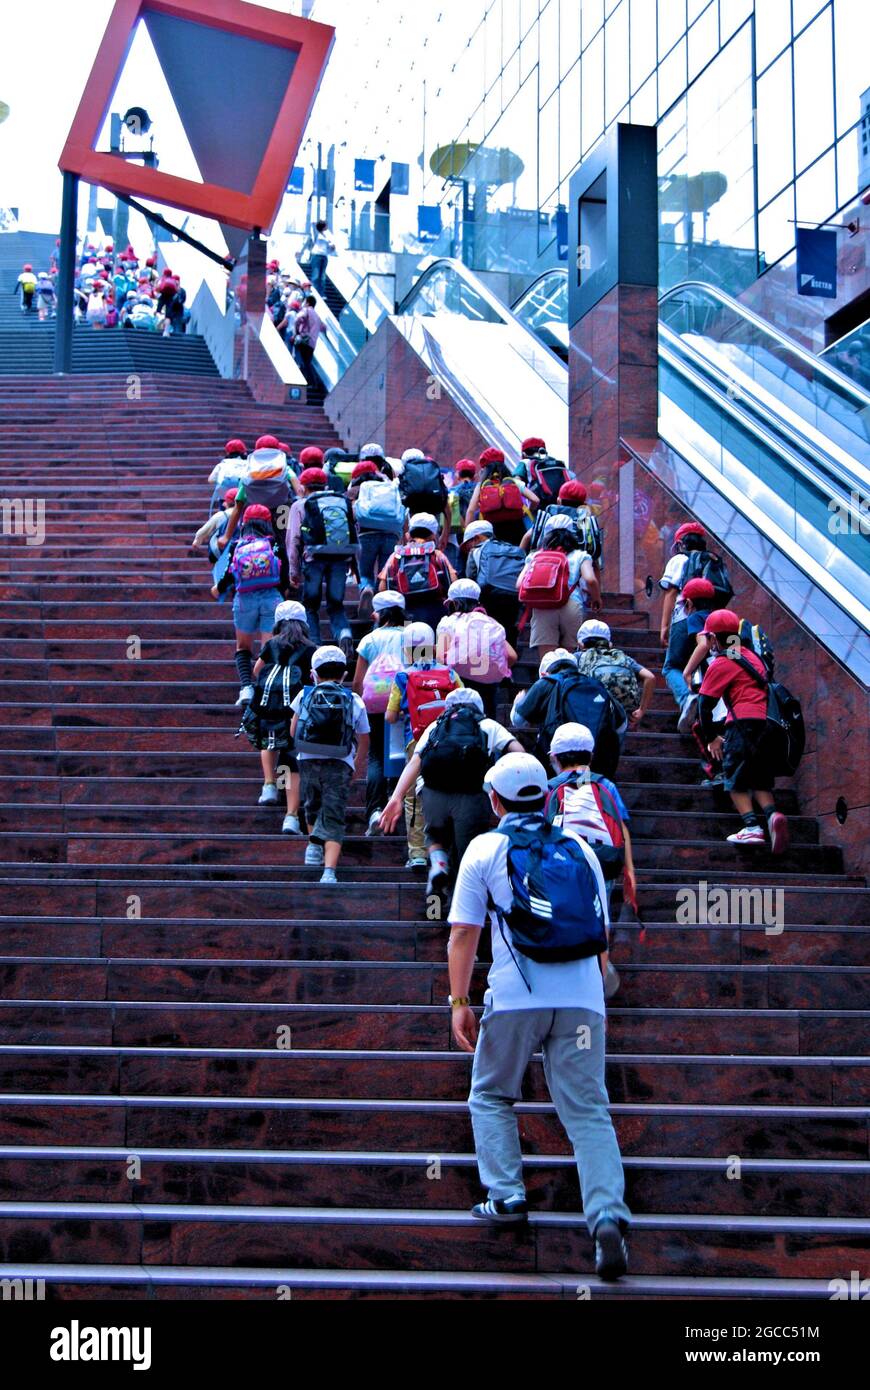 Bambini a scuola che si arrampicano sulla Grande scalinata della Stazione di Kyoto che conduce allo Sky Garden al 15.o piano, alla Stazione di Kyoto, Kyoto, Giappone Foto Stock